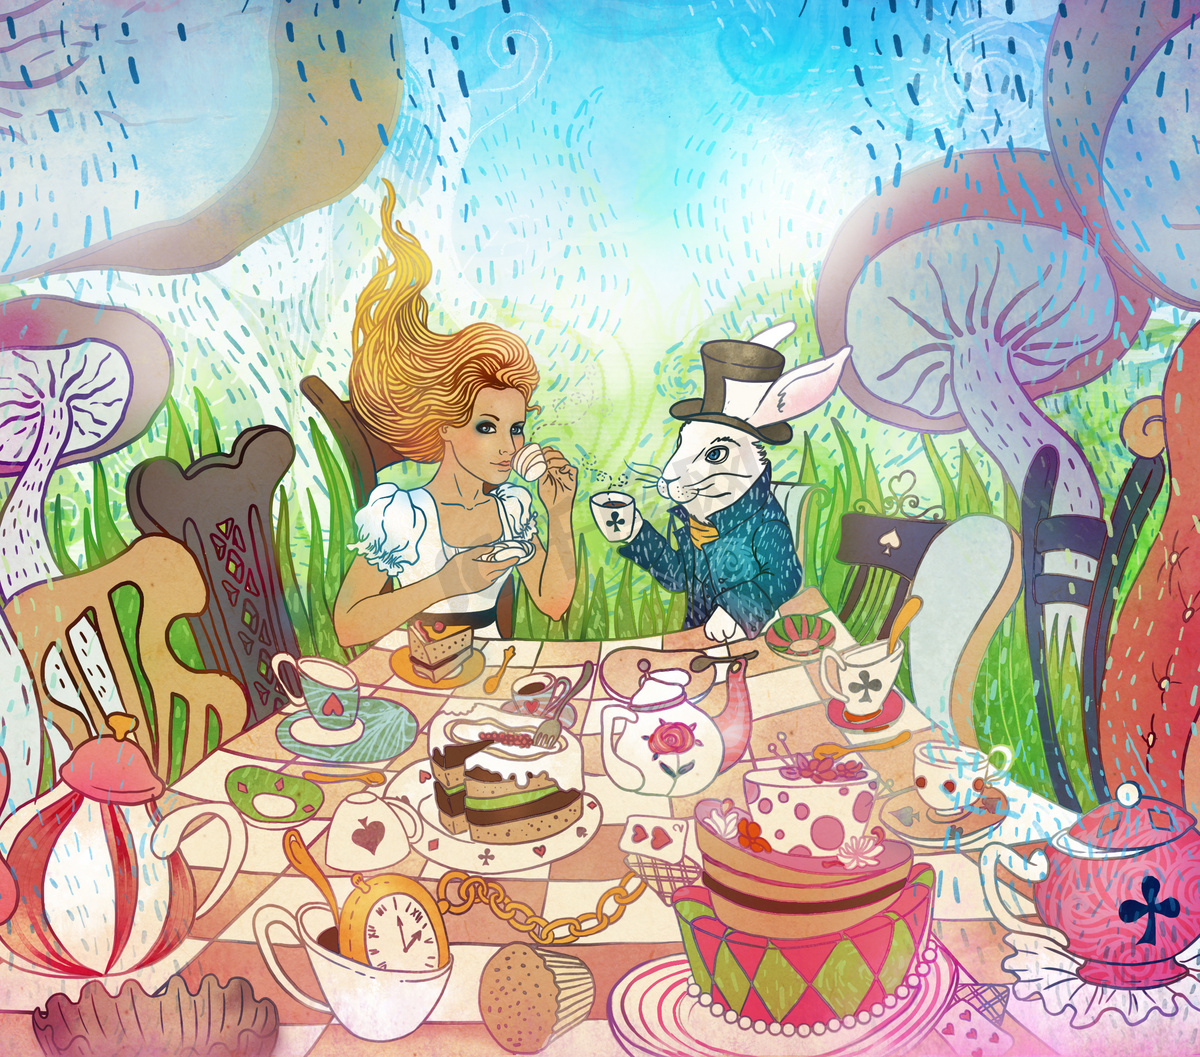 疯狂的茶会。爱丽丝梦游仙境 》 的插图。Gi图片